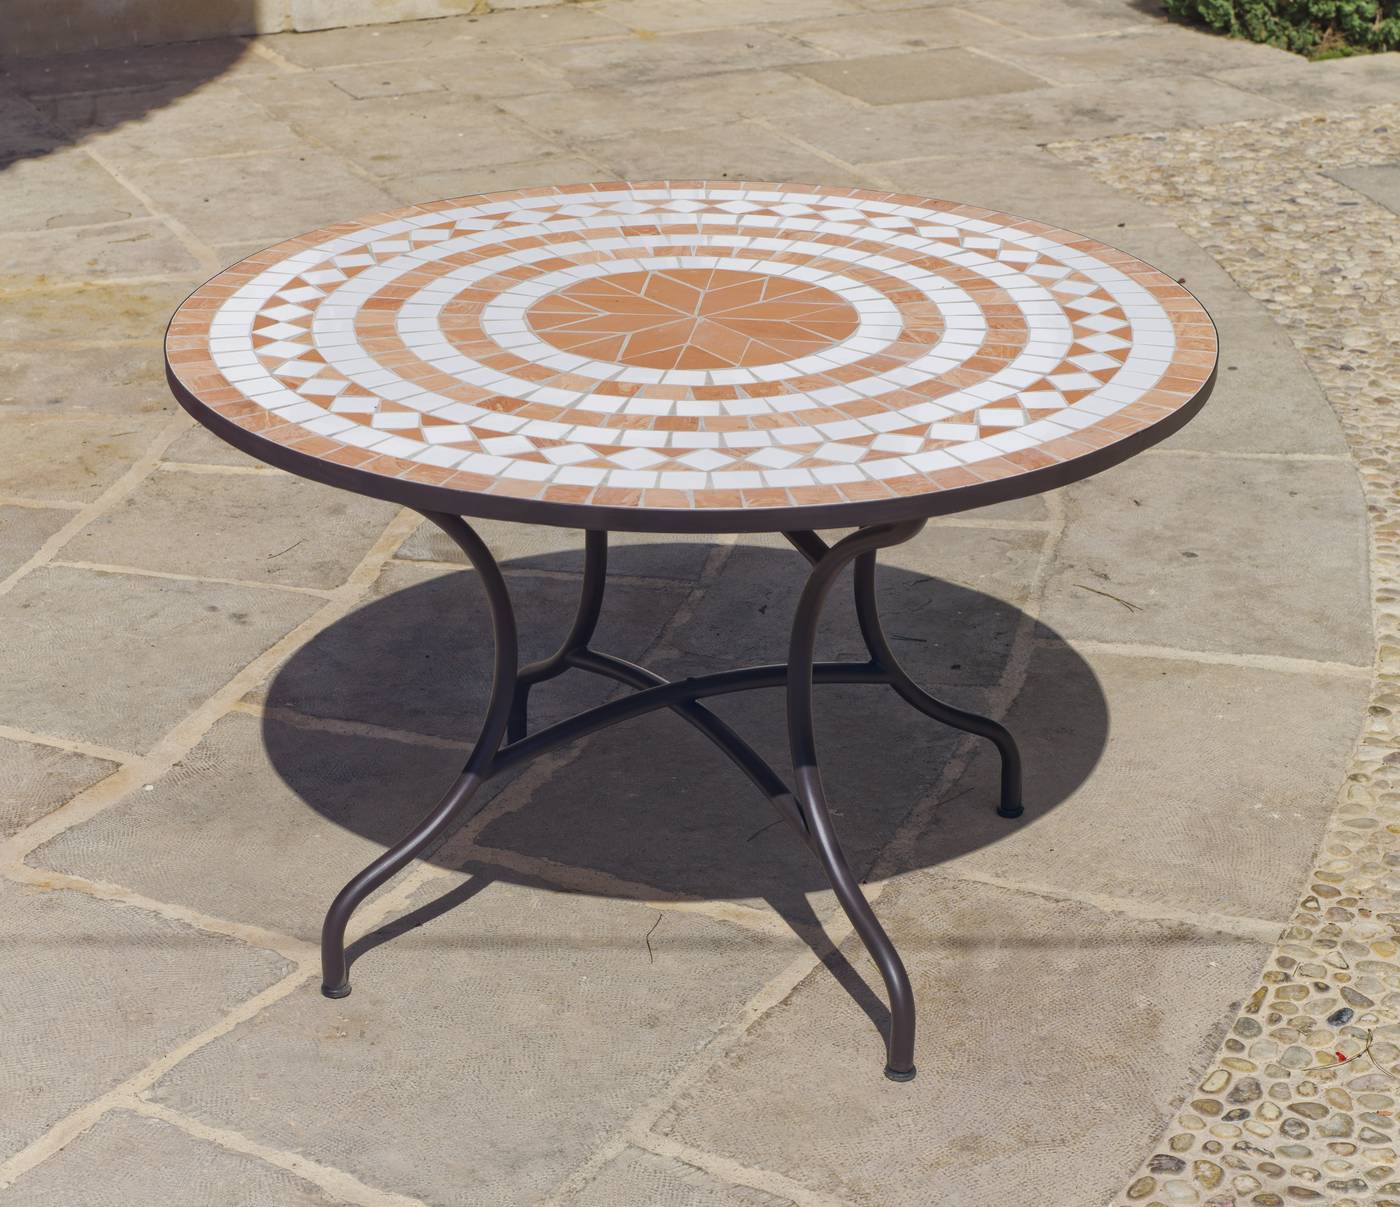 Set Mosaico Dogliani-Beldey 120-6 - Conjunto de forja color bronce: mesa redonda de acero forjado, con tablero mosaico de 120 cm. + 6 sillones de acero y wicker